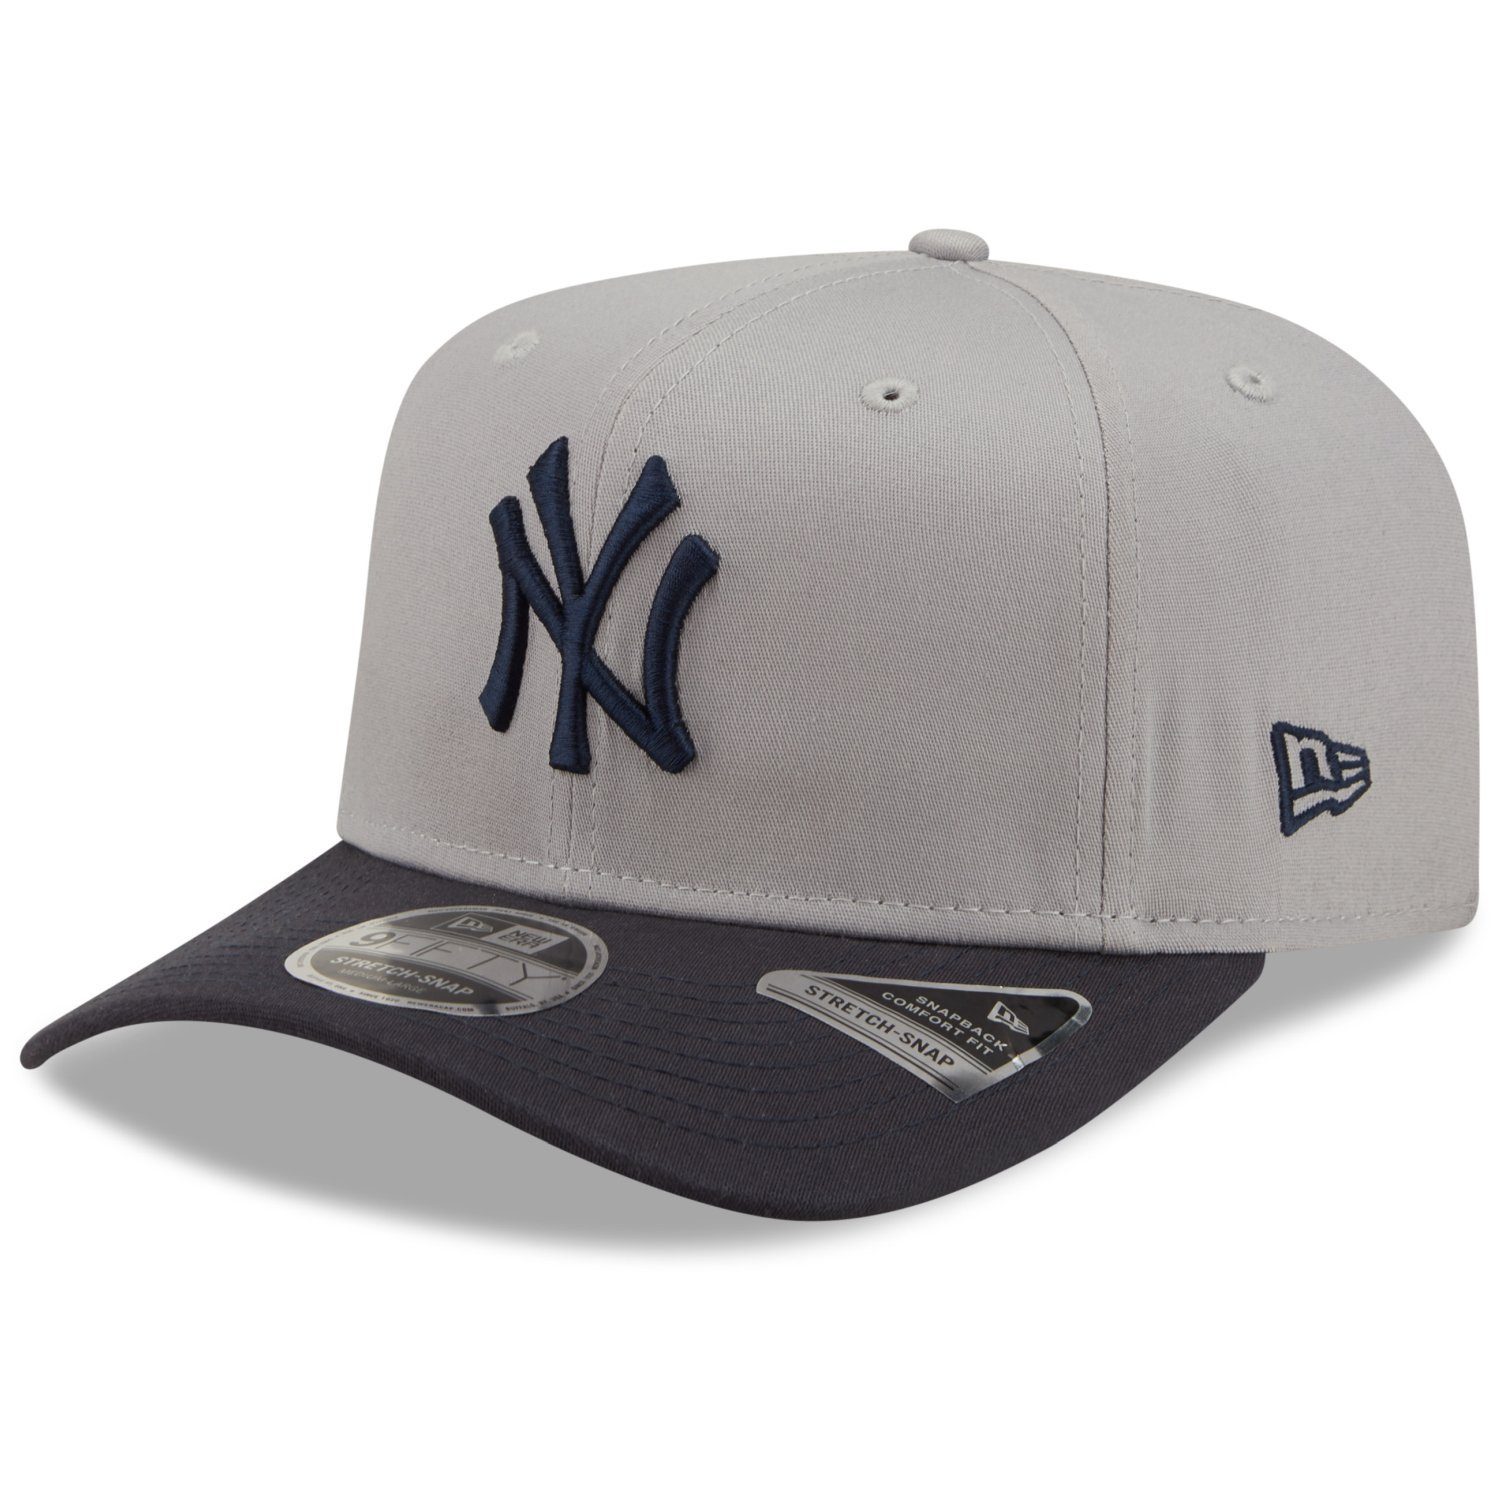 Herren Caps New Era Flex Cap 9Fifty Stretch New York Yankees